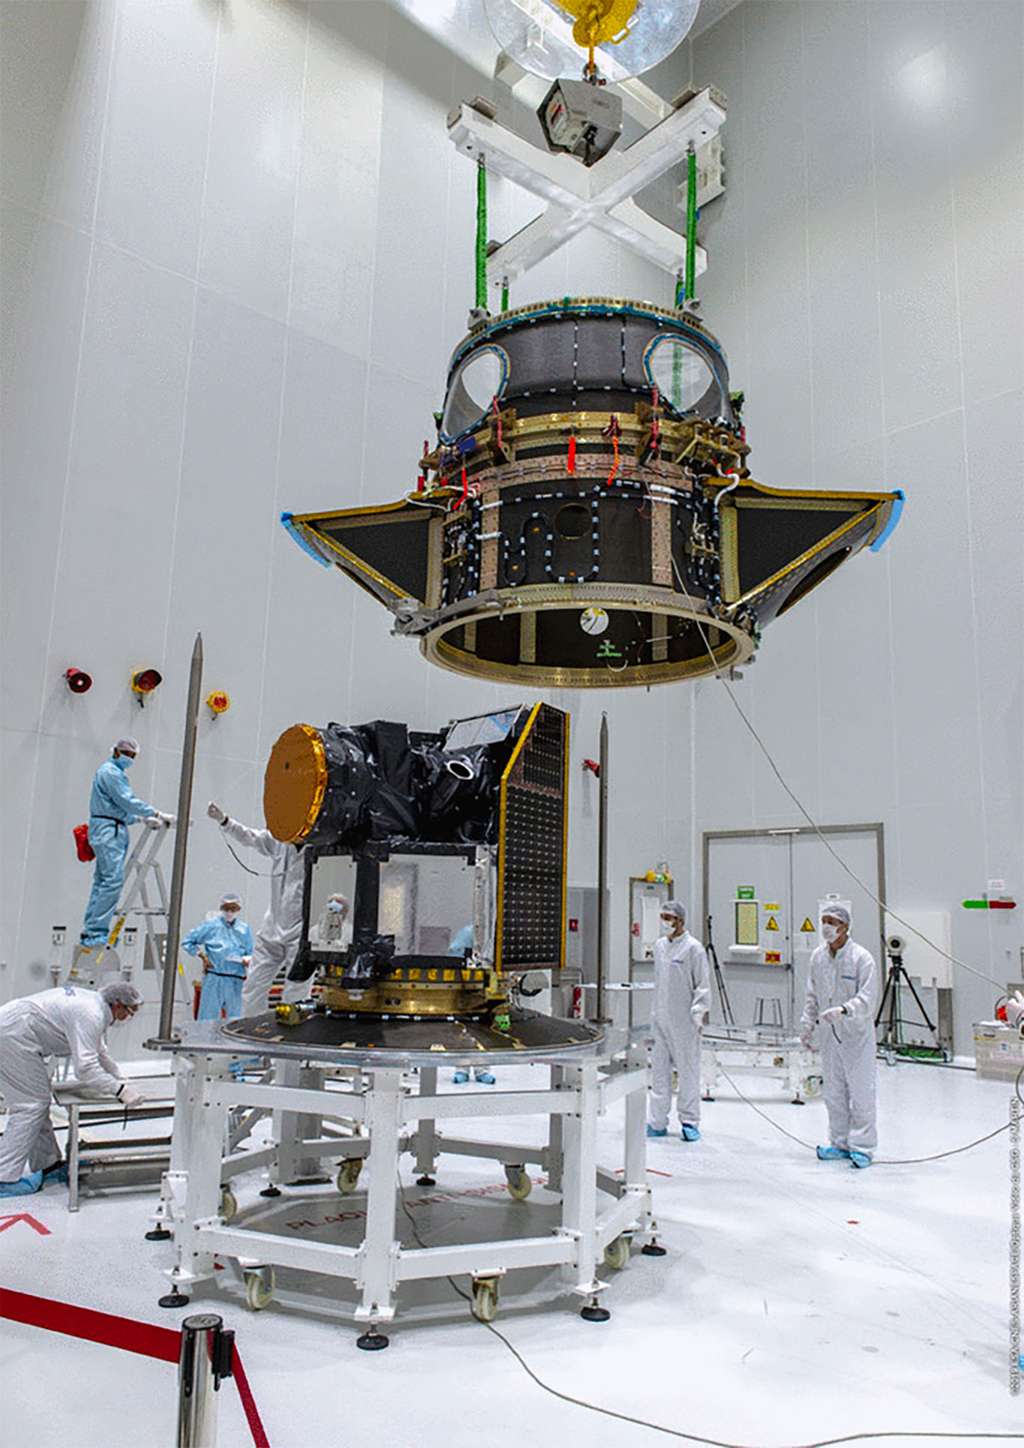 Le satellite Cheops encapsulé dans le système Soyouz Arianespace pour charges utiles auxiliaires. On regrettera qu'à l'ère de l'ADSL et de la fibre, le Cnes CSG diffuse seulement des images de piètre définition. © Cnes, ESA, service optique CSG